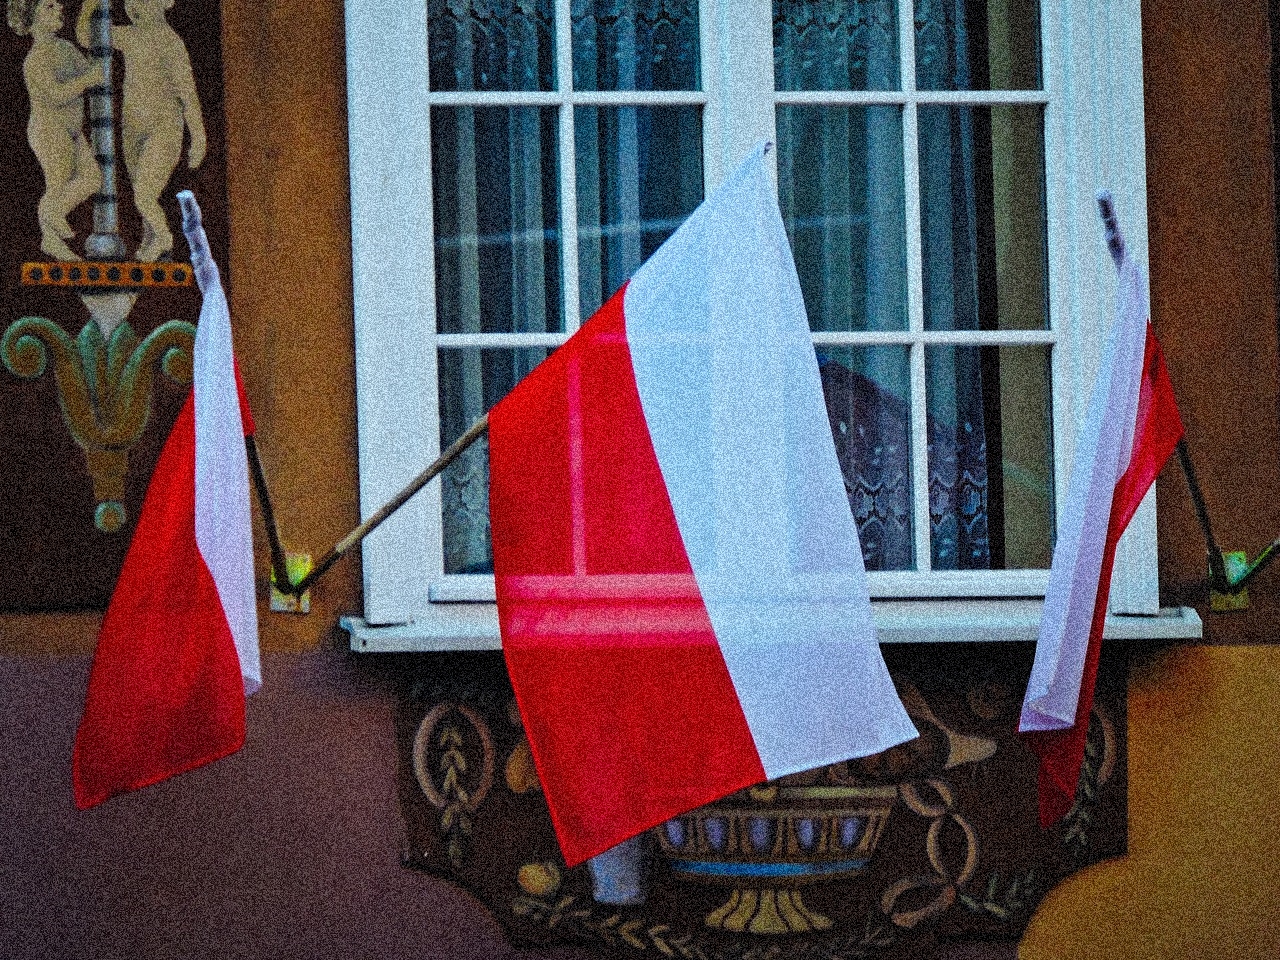 Допомога від фонду “Свобода та демократія” для українців у Польщі, котрі мають Карту поляка